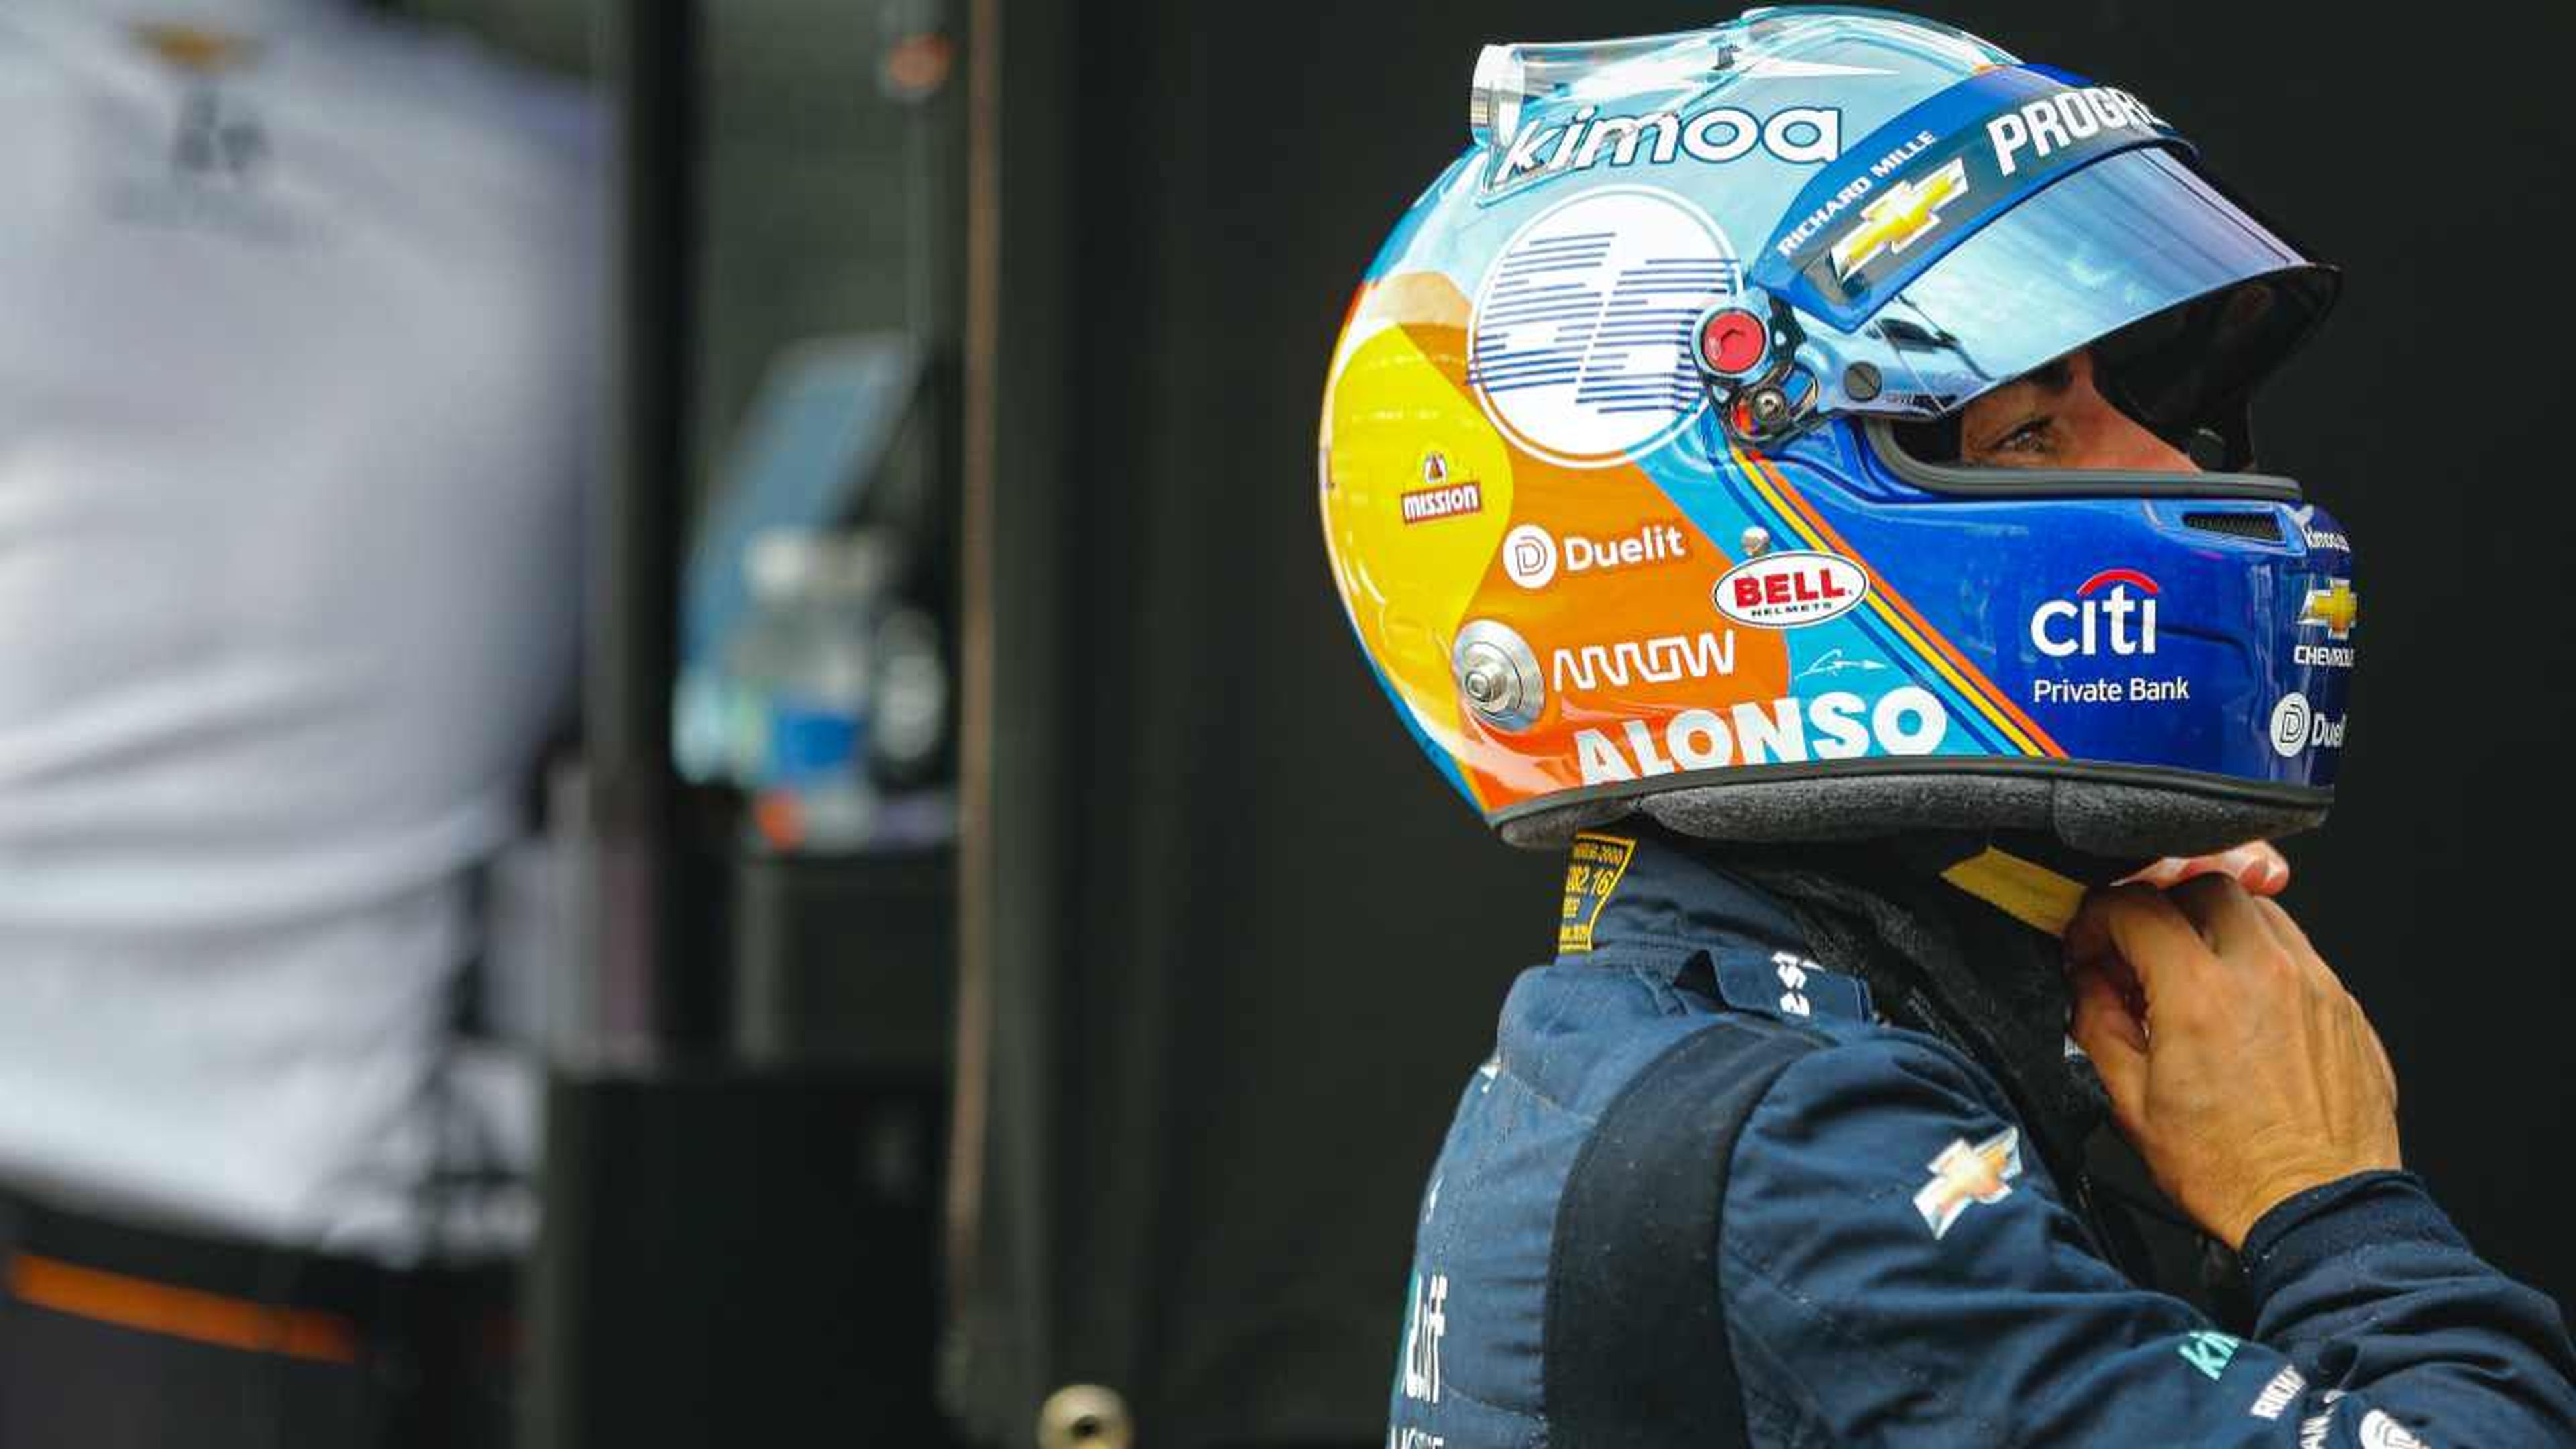 Fernando Alonso Indy 500